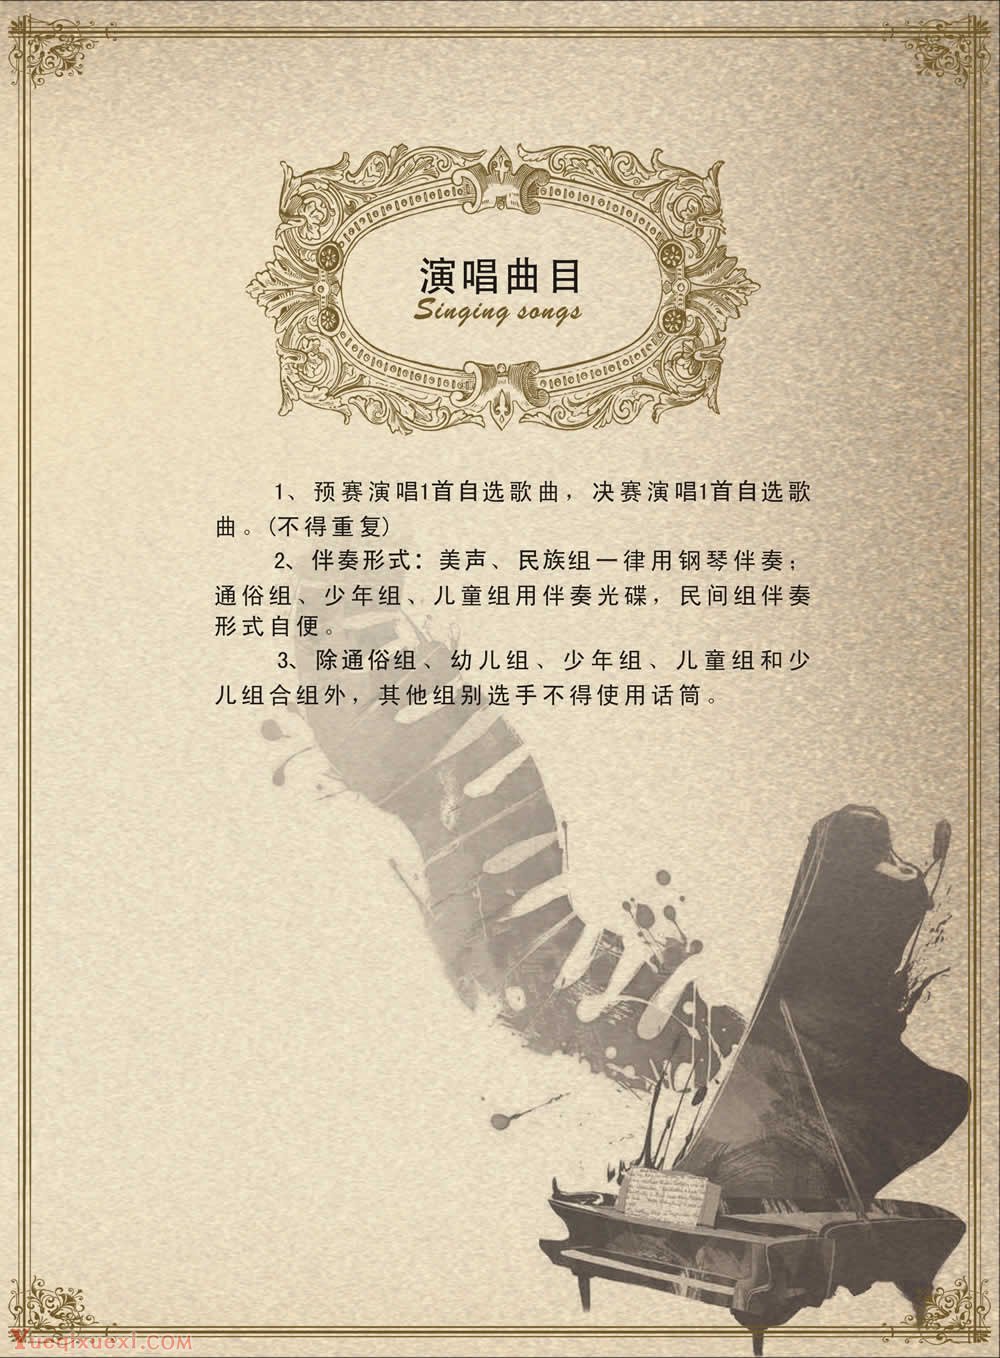 第四届陕西音乐奖声乐比赛章程